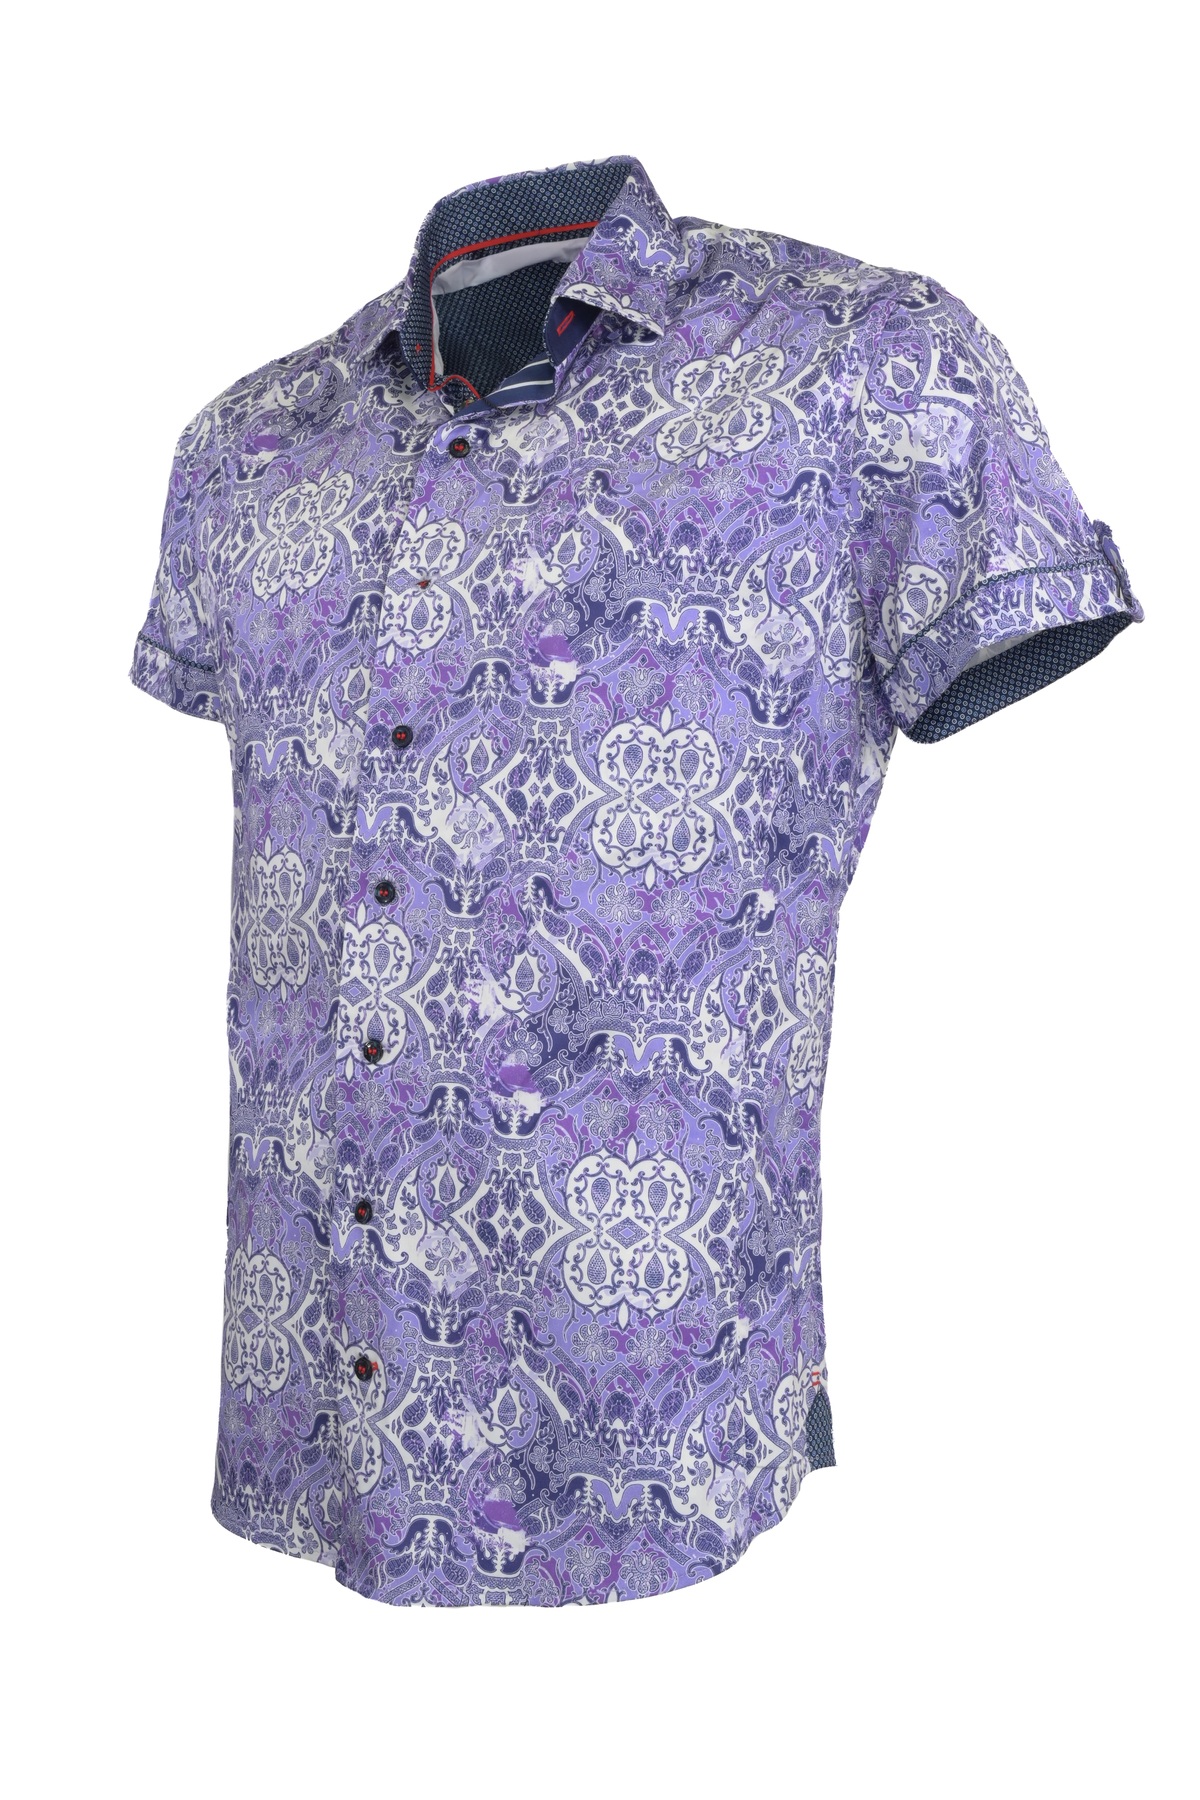 Au Noir Tacoma Short Sleeve Shirt Lavender